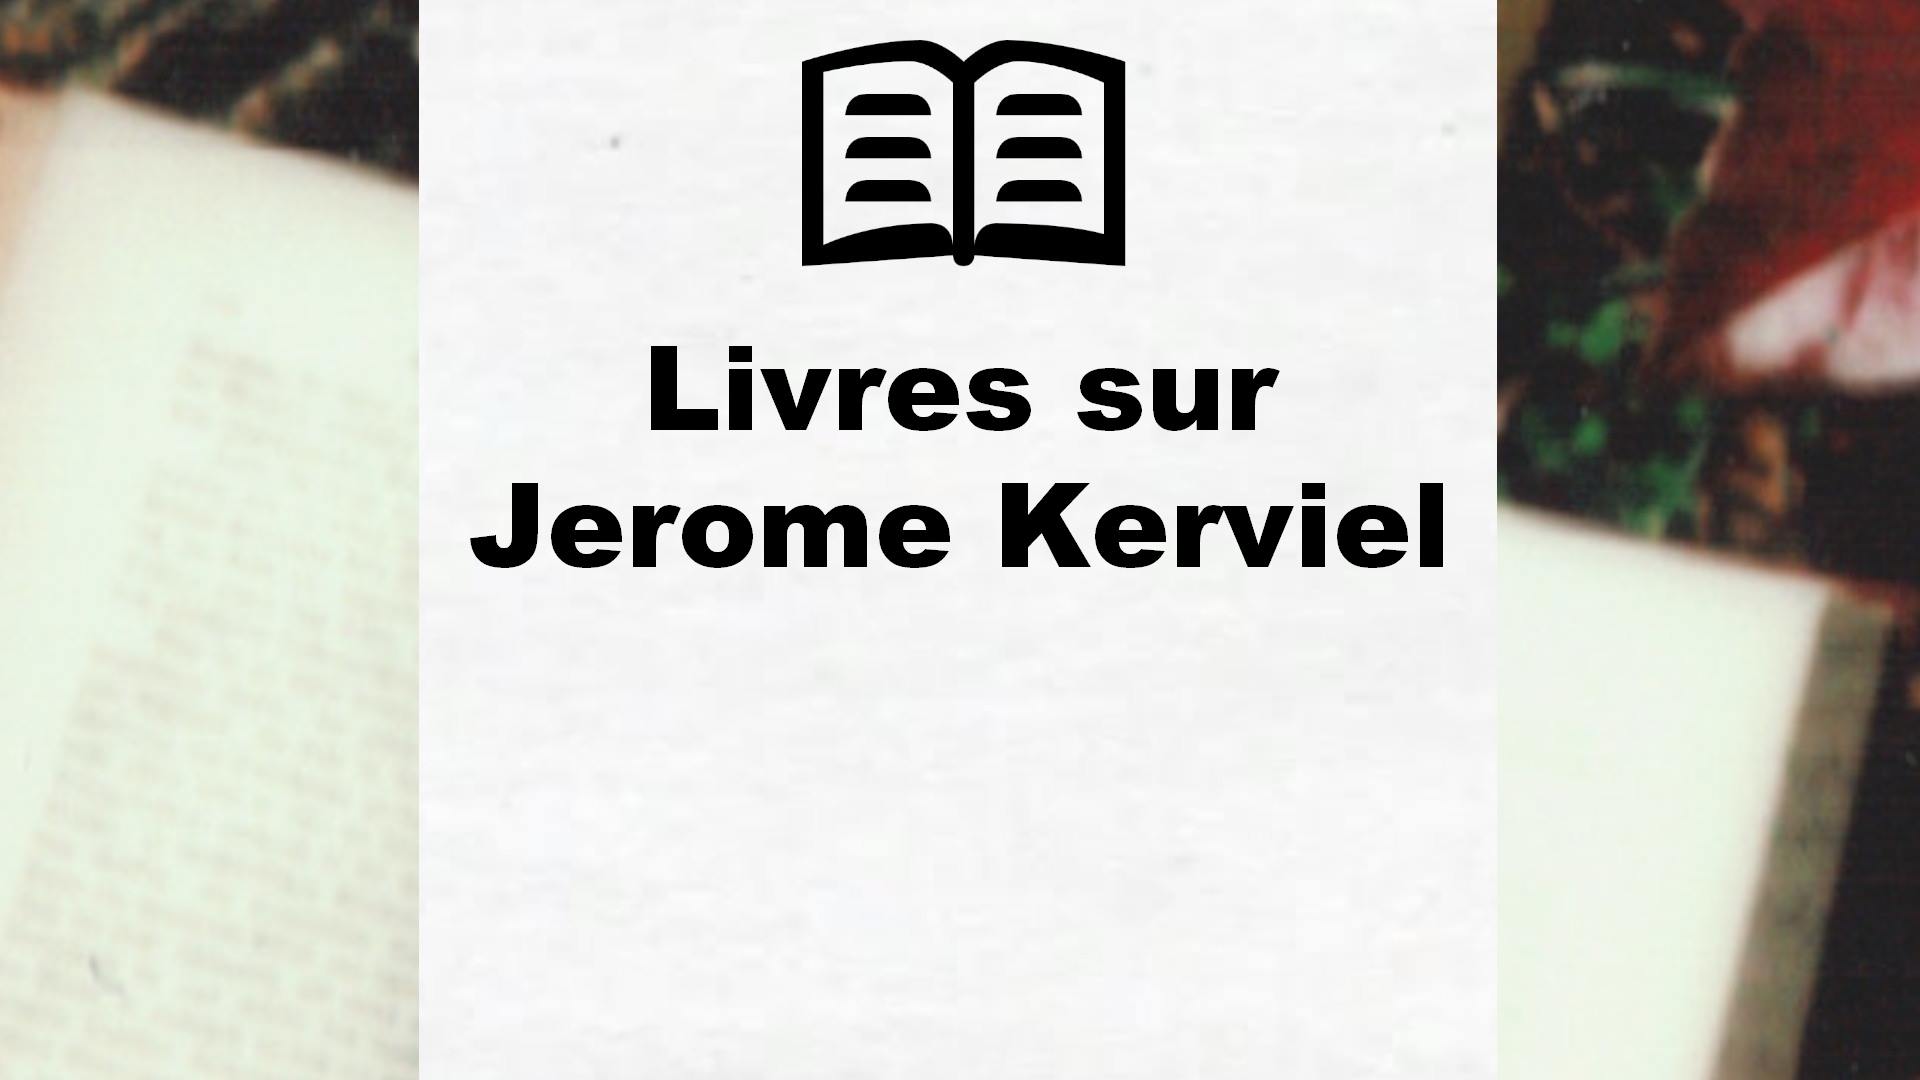 Livres sur Jerome Kerviel